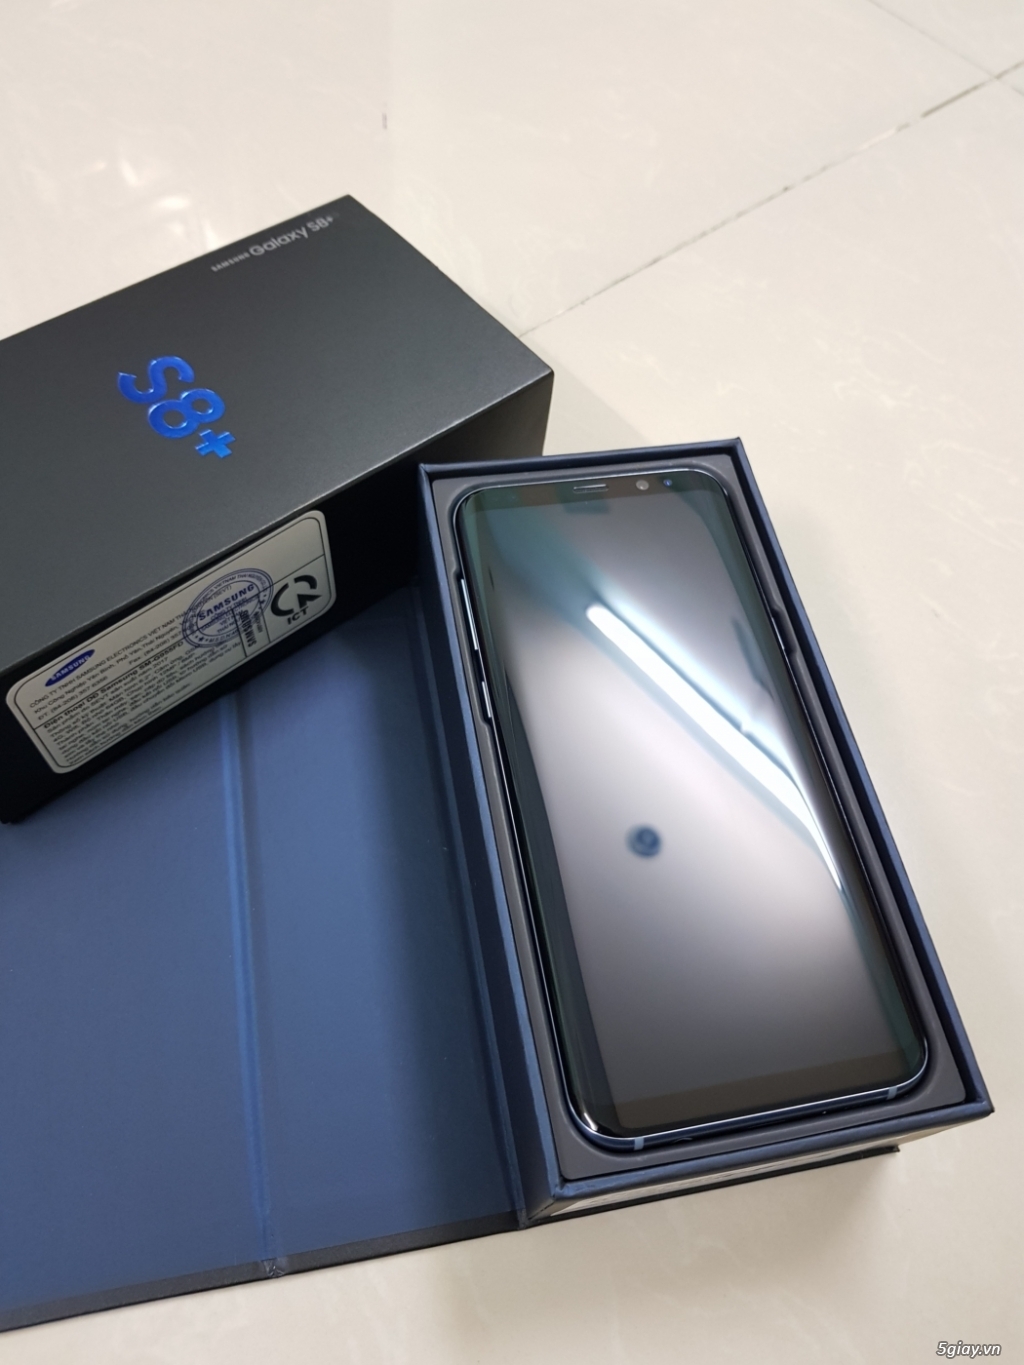 S8 plus blue hàng cty bh 7/2018 đẹp keng tặng ốp lưng chính hãng - 2